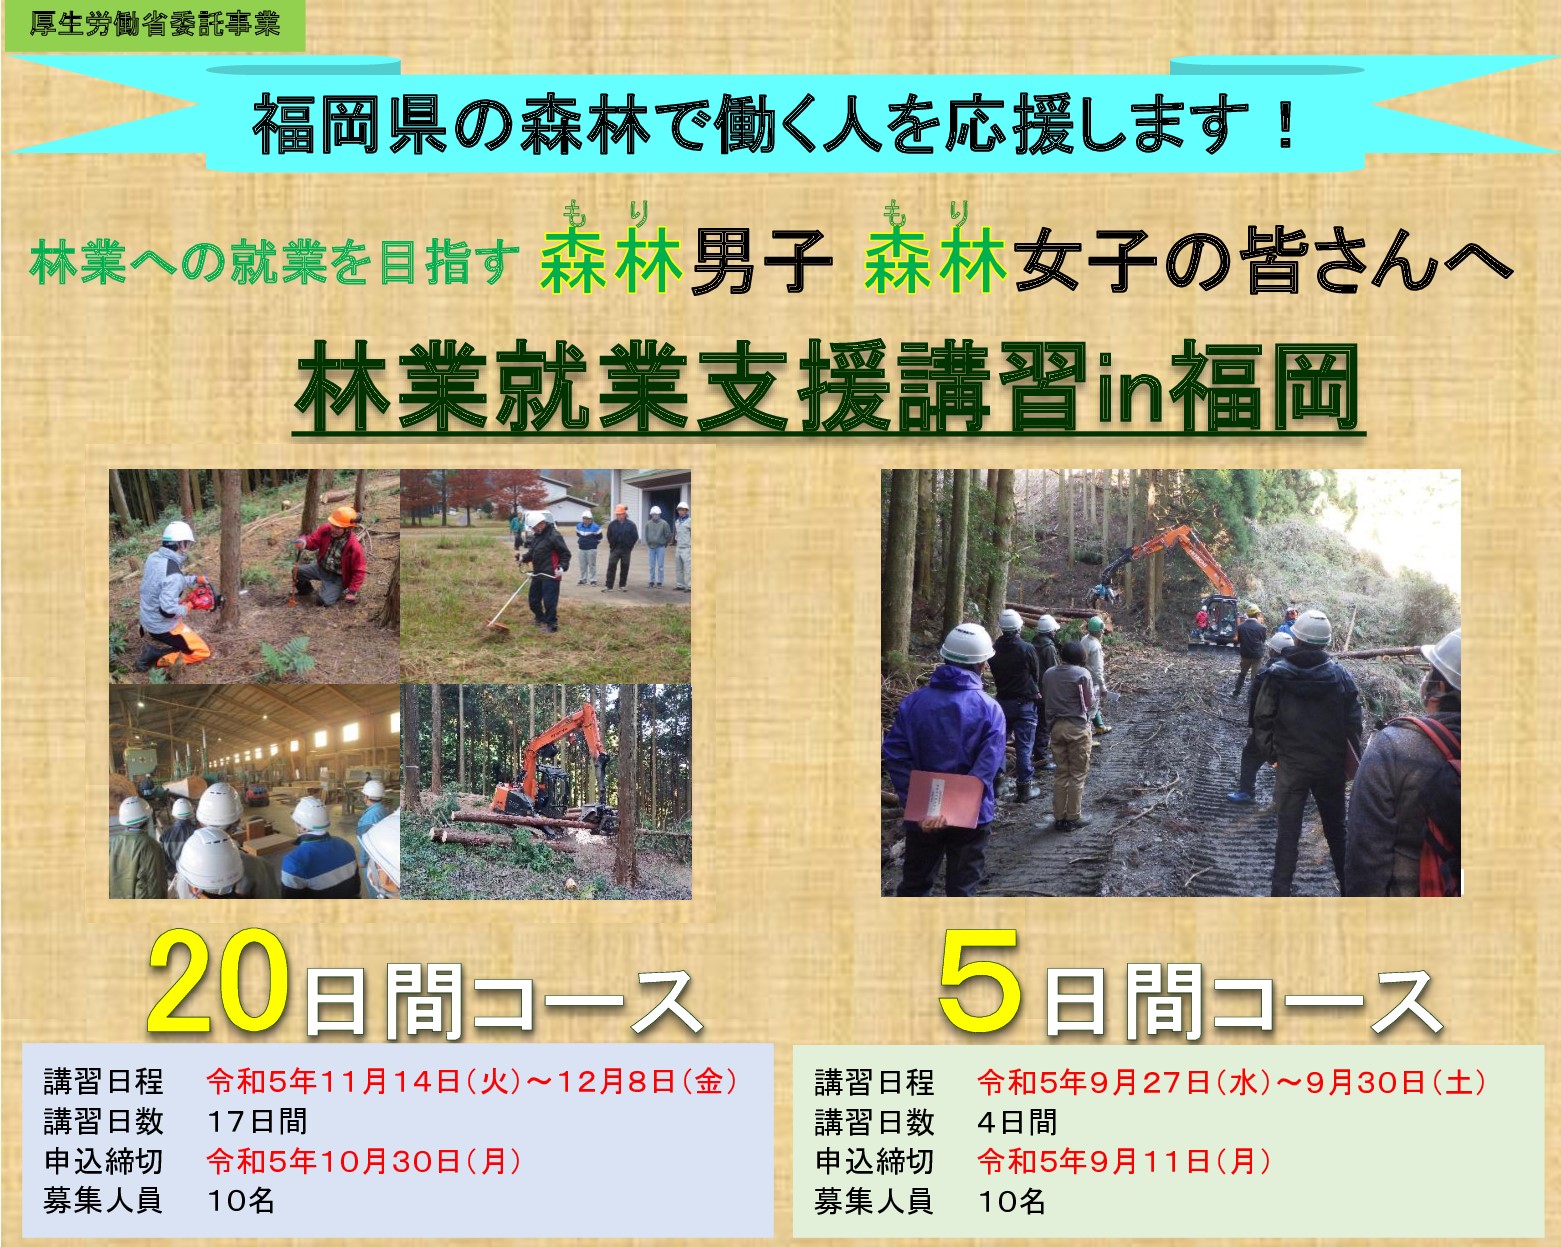 参加費無料の「林業就業支援講習in福岡」を開催します！！